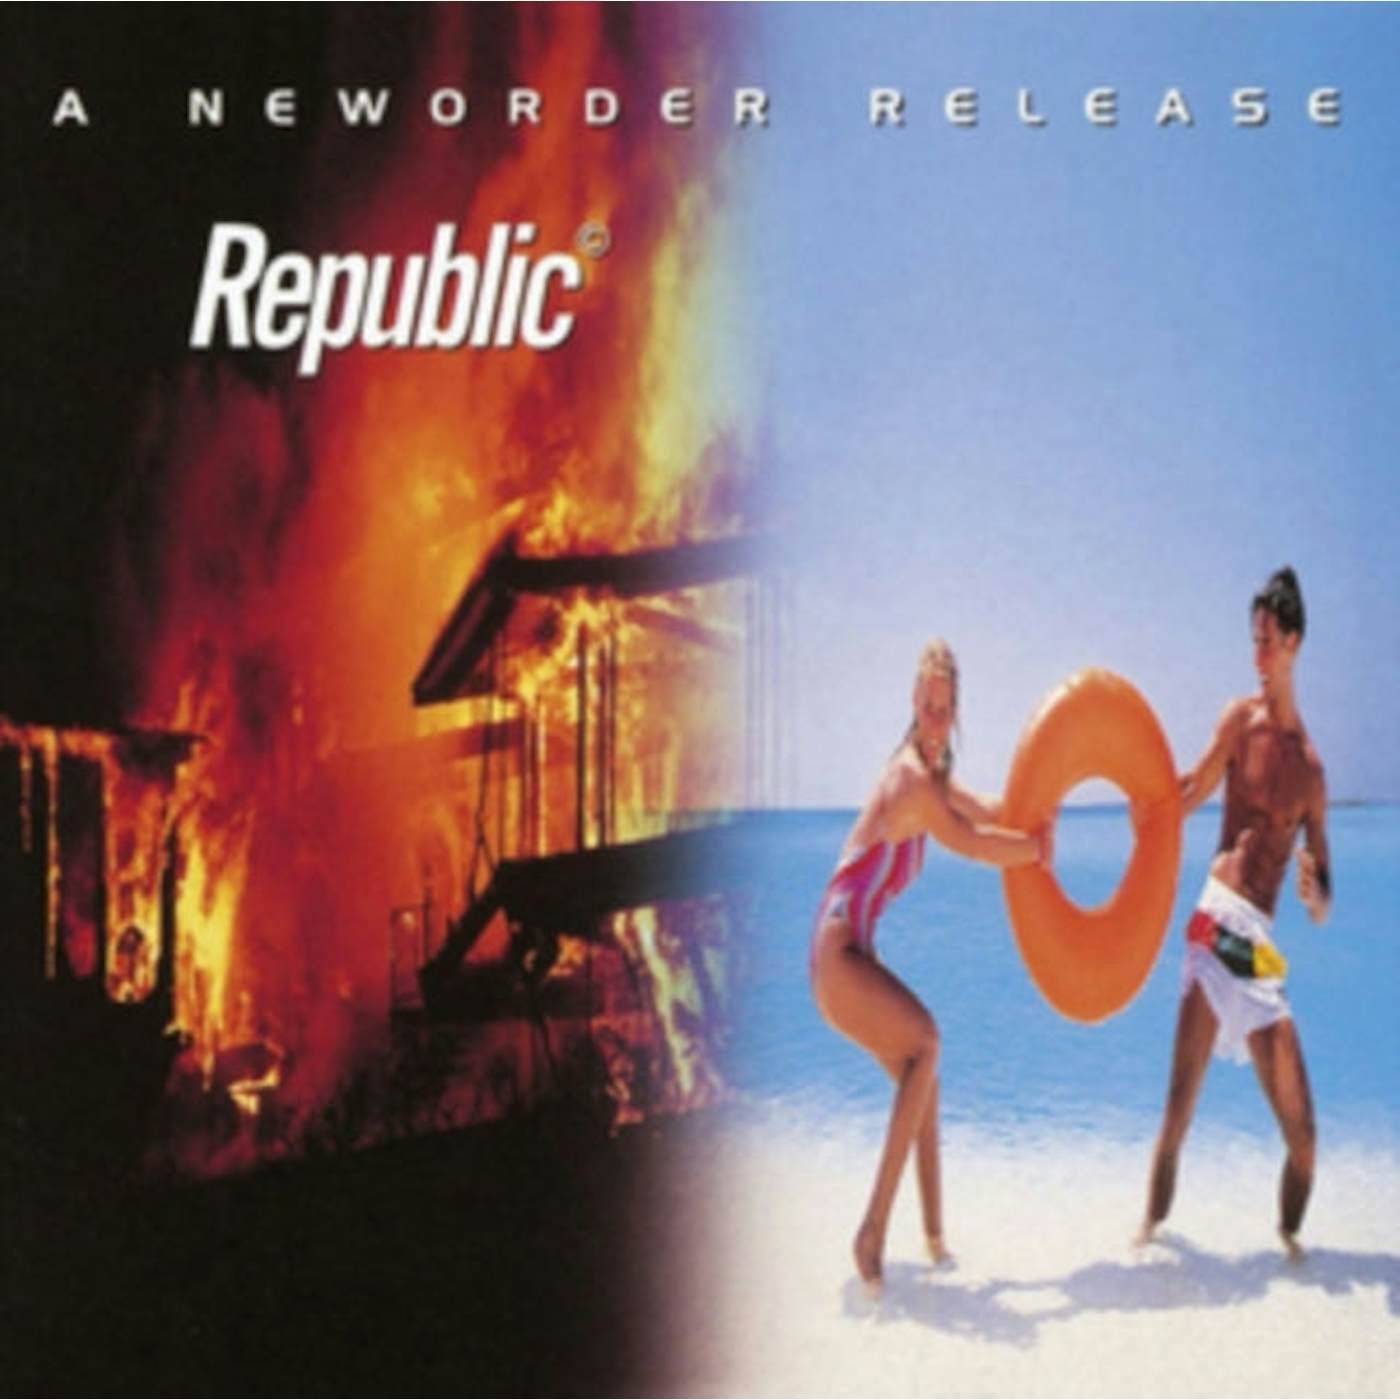 New Order LP Vinyl Record - Republic